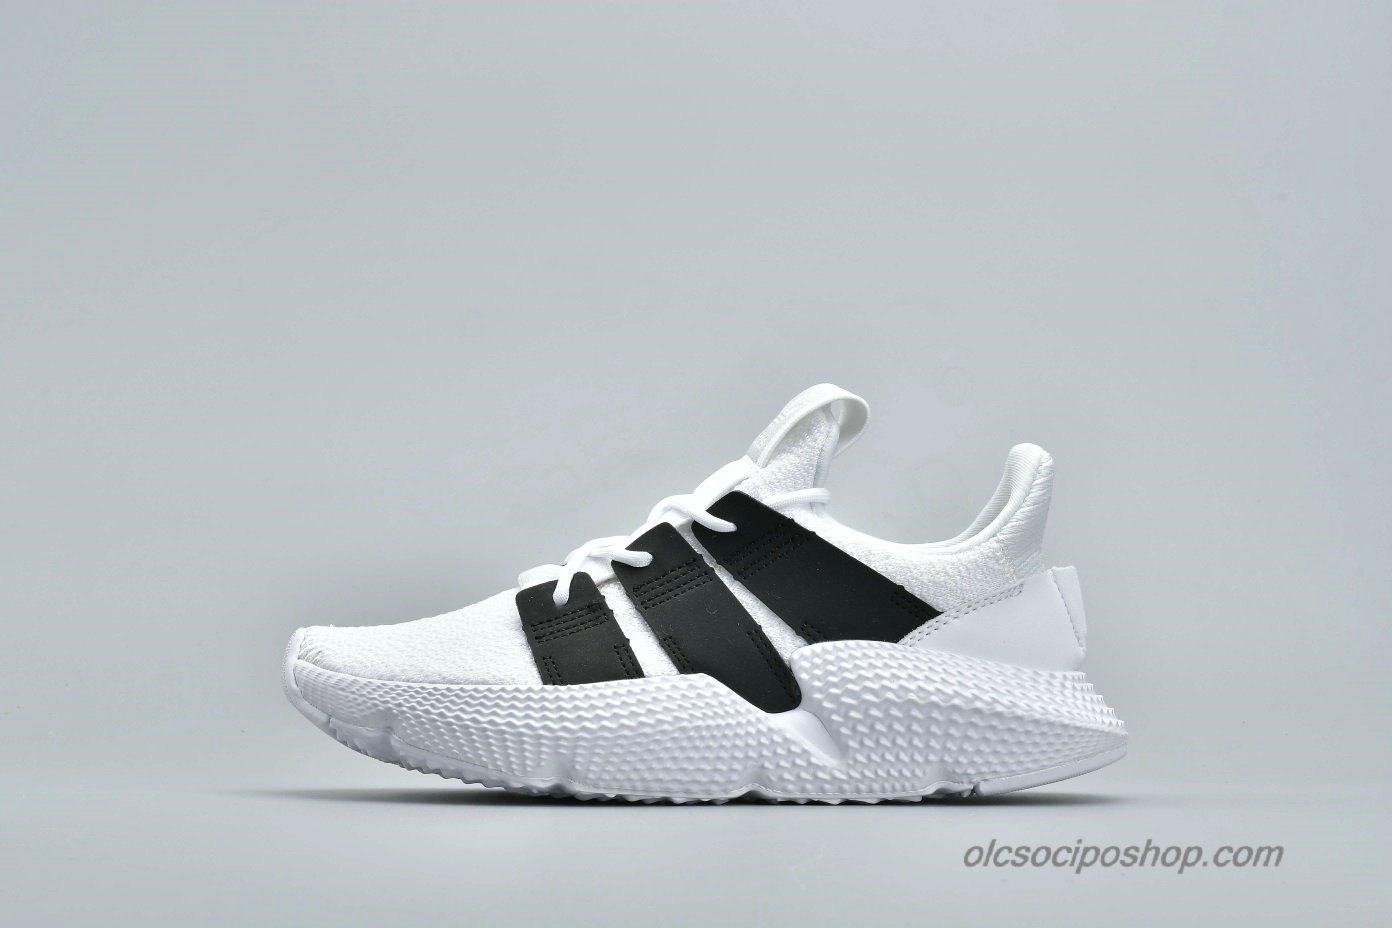 Adidas Prophere Undftd Fehér/Fekete Cipők (B96727) - Kattintásra bezárul